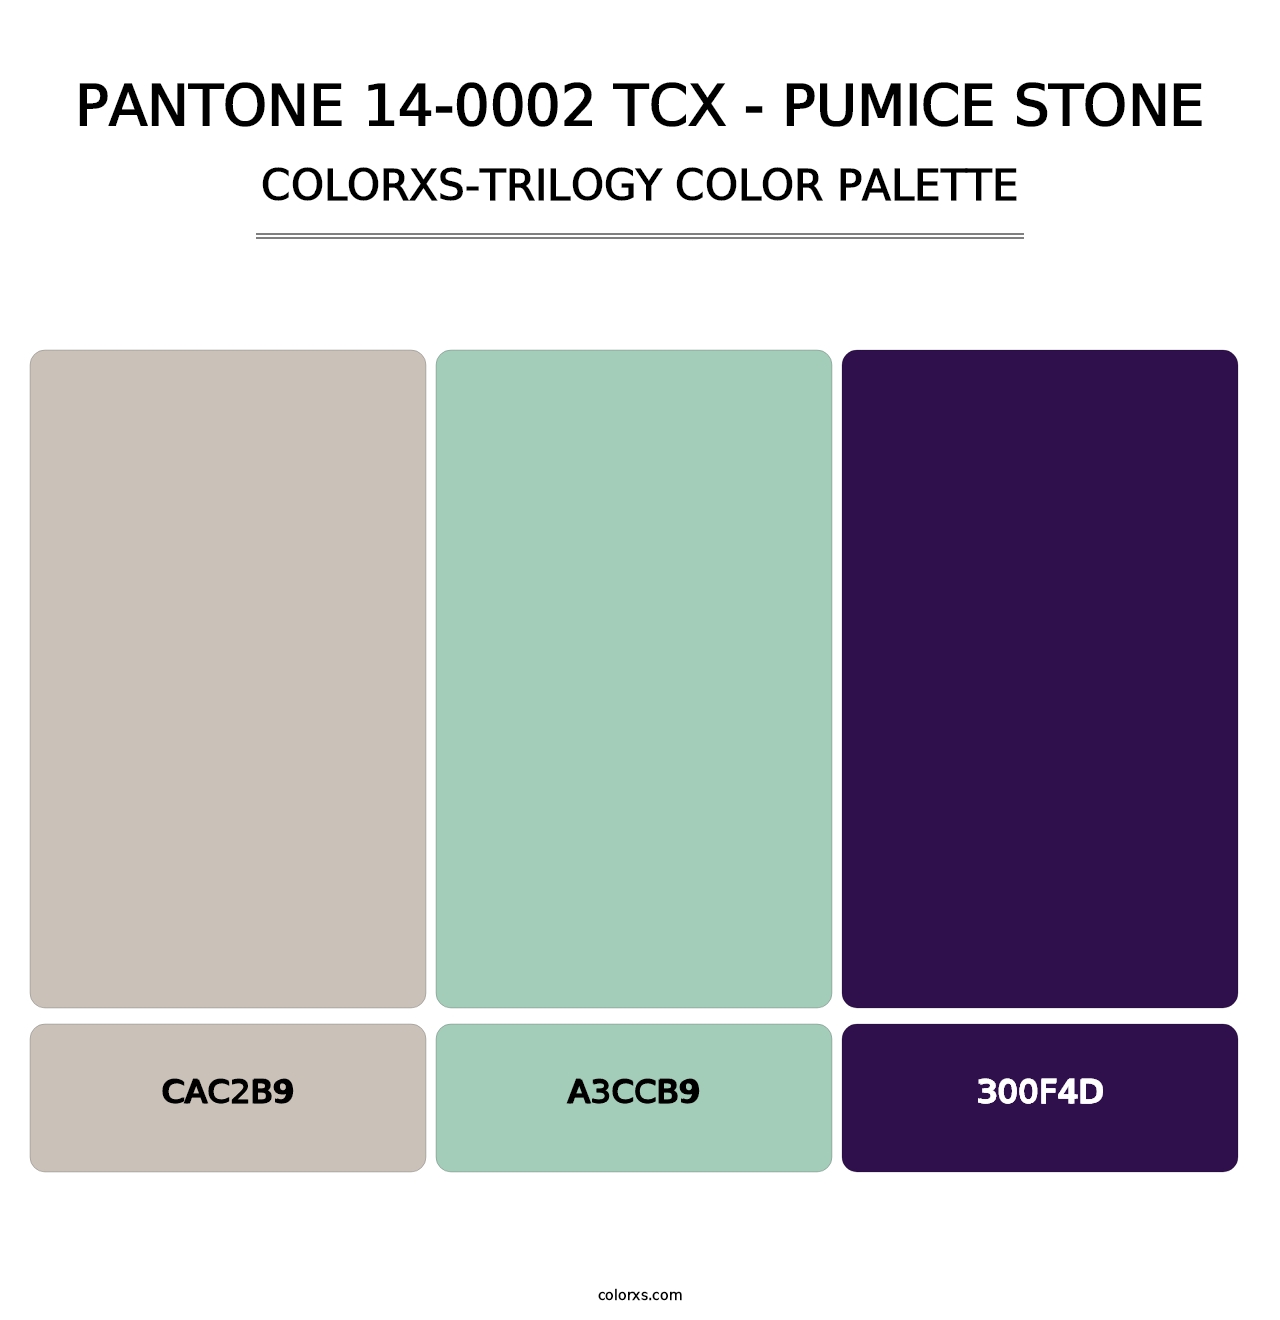 PANTONE 14-0002 TCX - Pumice Stone - Colorxs Trilogy Palette